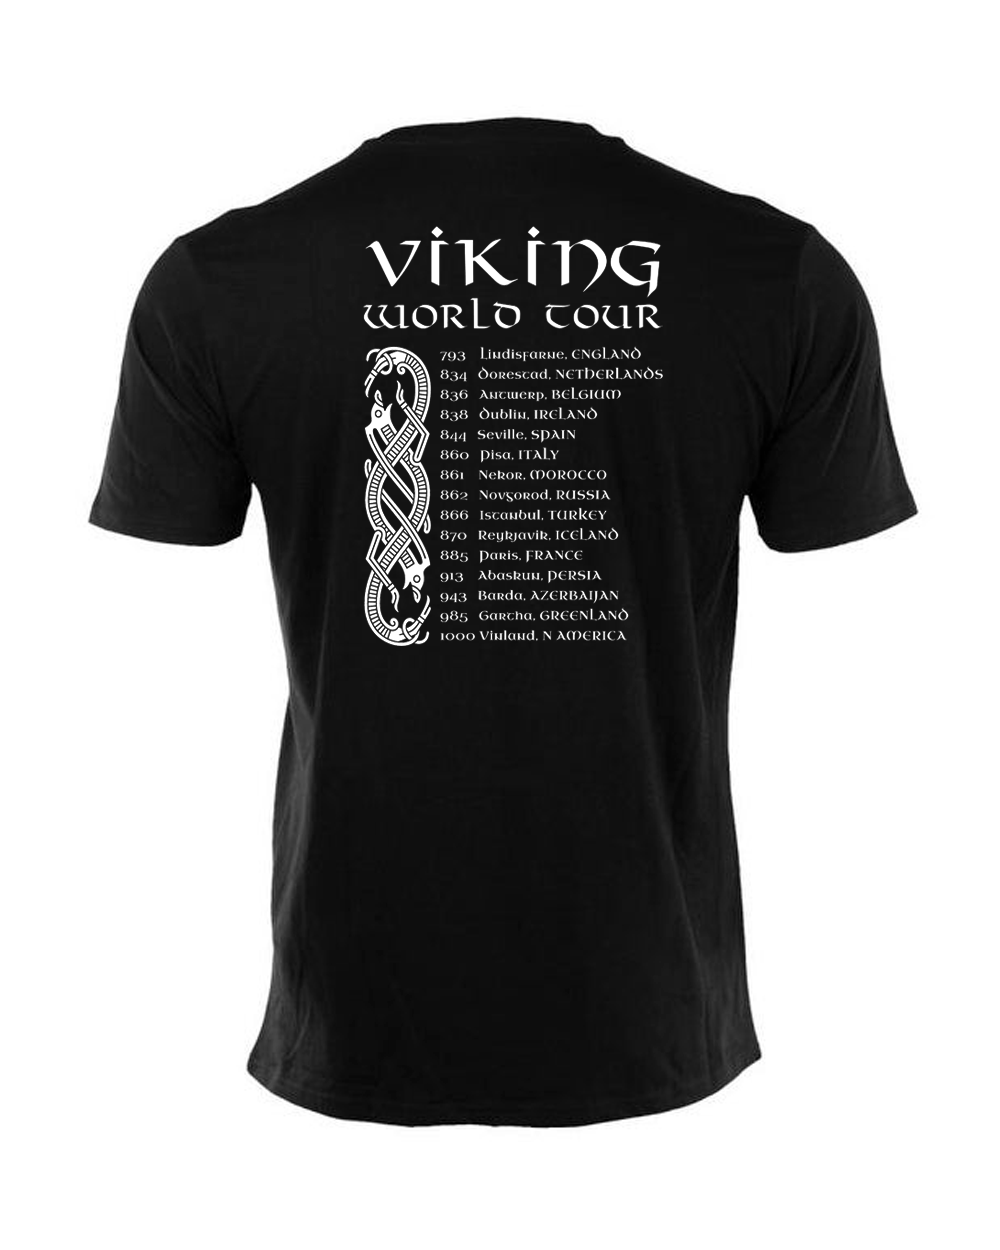 Vikingarnas turneshema tryckt på ryggen på en svart tshirt och fungerar som en historisk kalender.